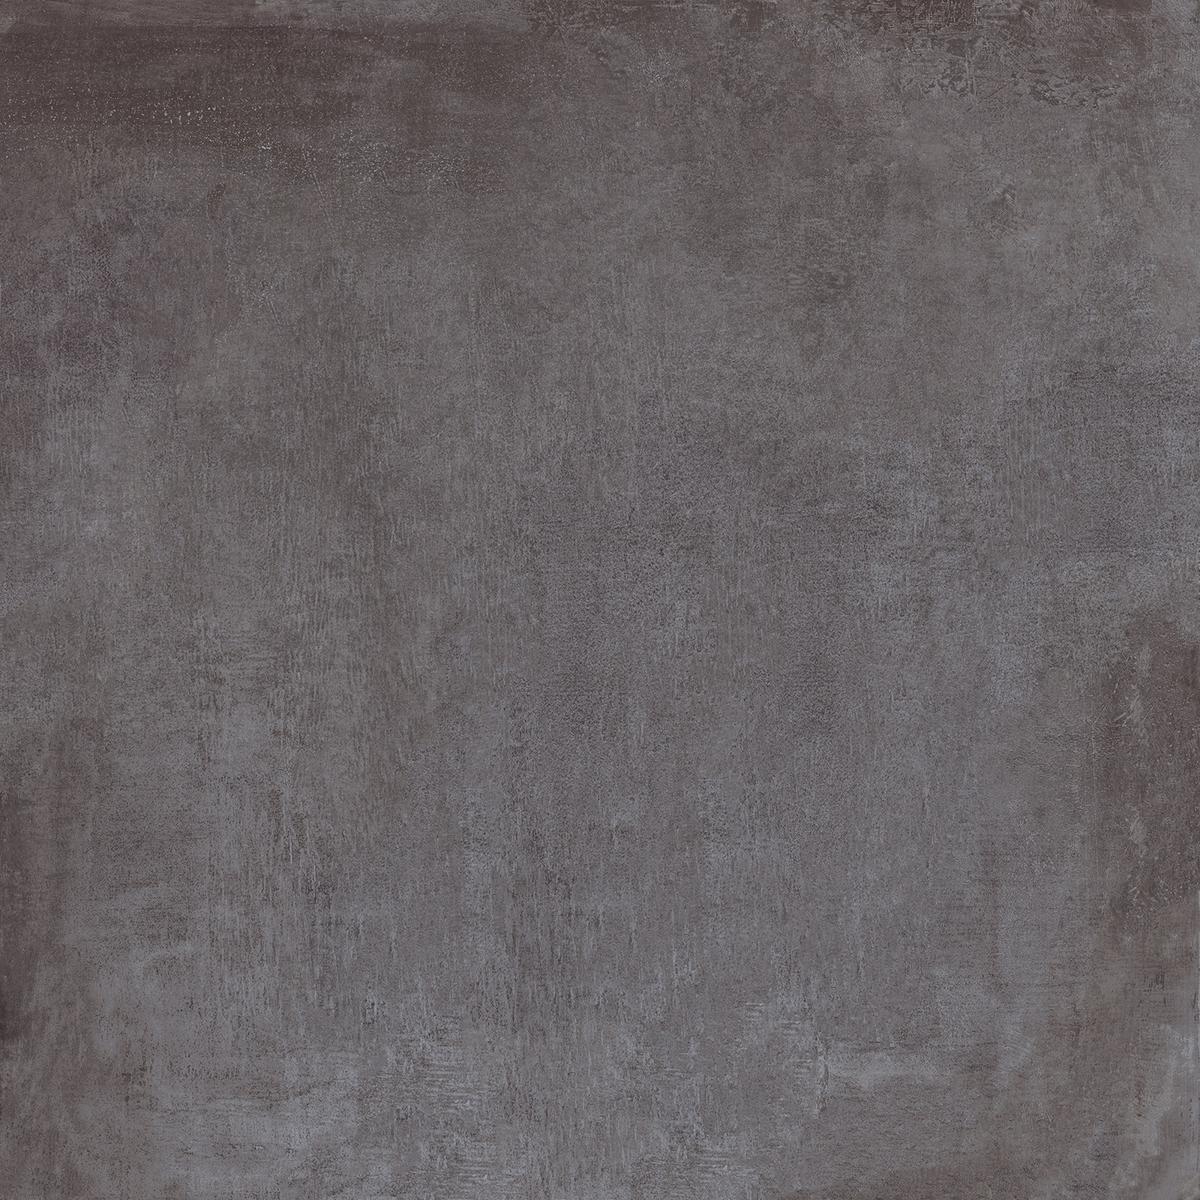 Carrelage effet ciment noir nuancé de gris, texture brossée, taille 60x60 cm